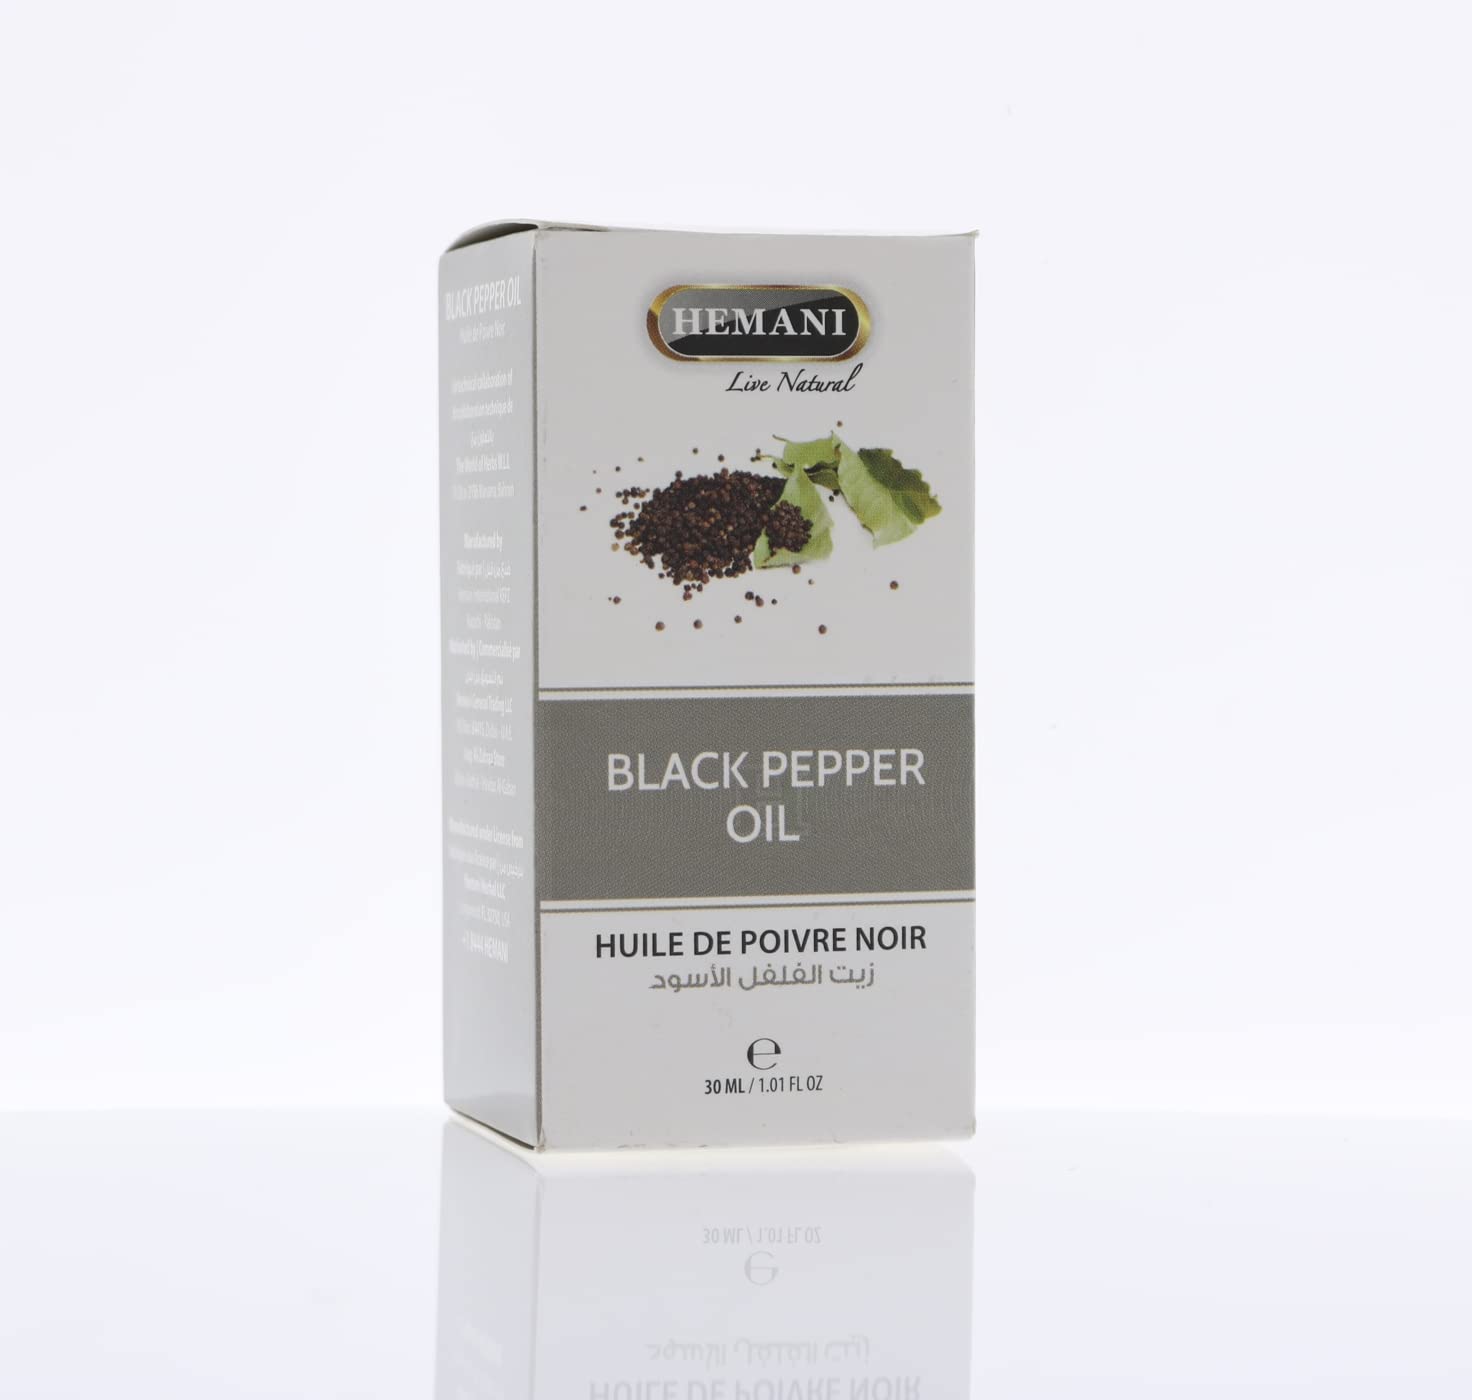 Hemani Black Pepper Oil, 30 ml